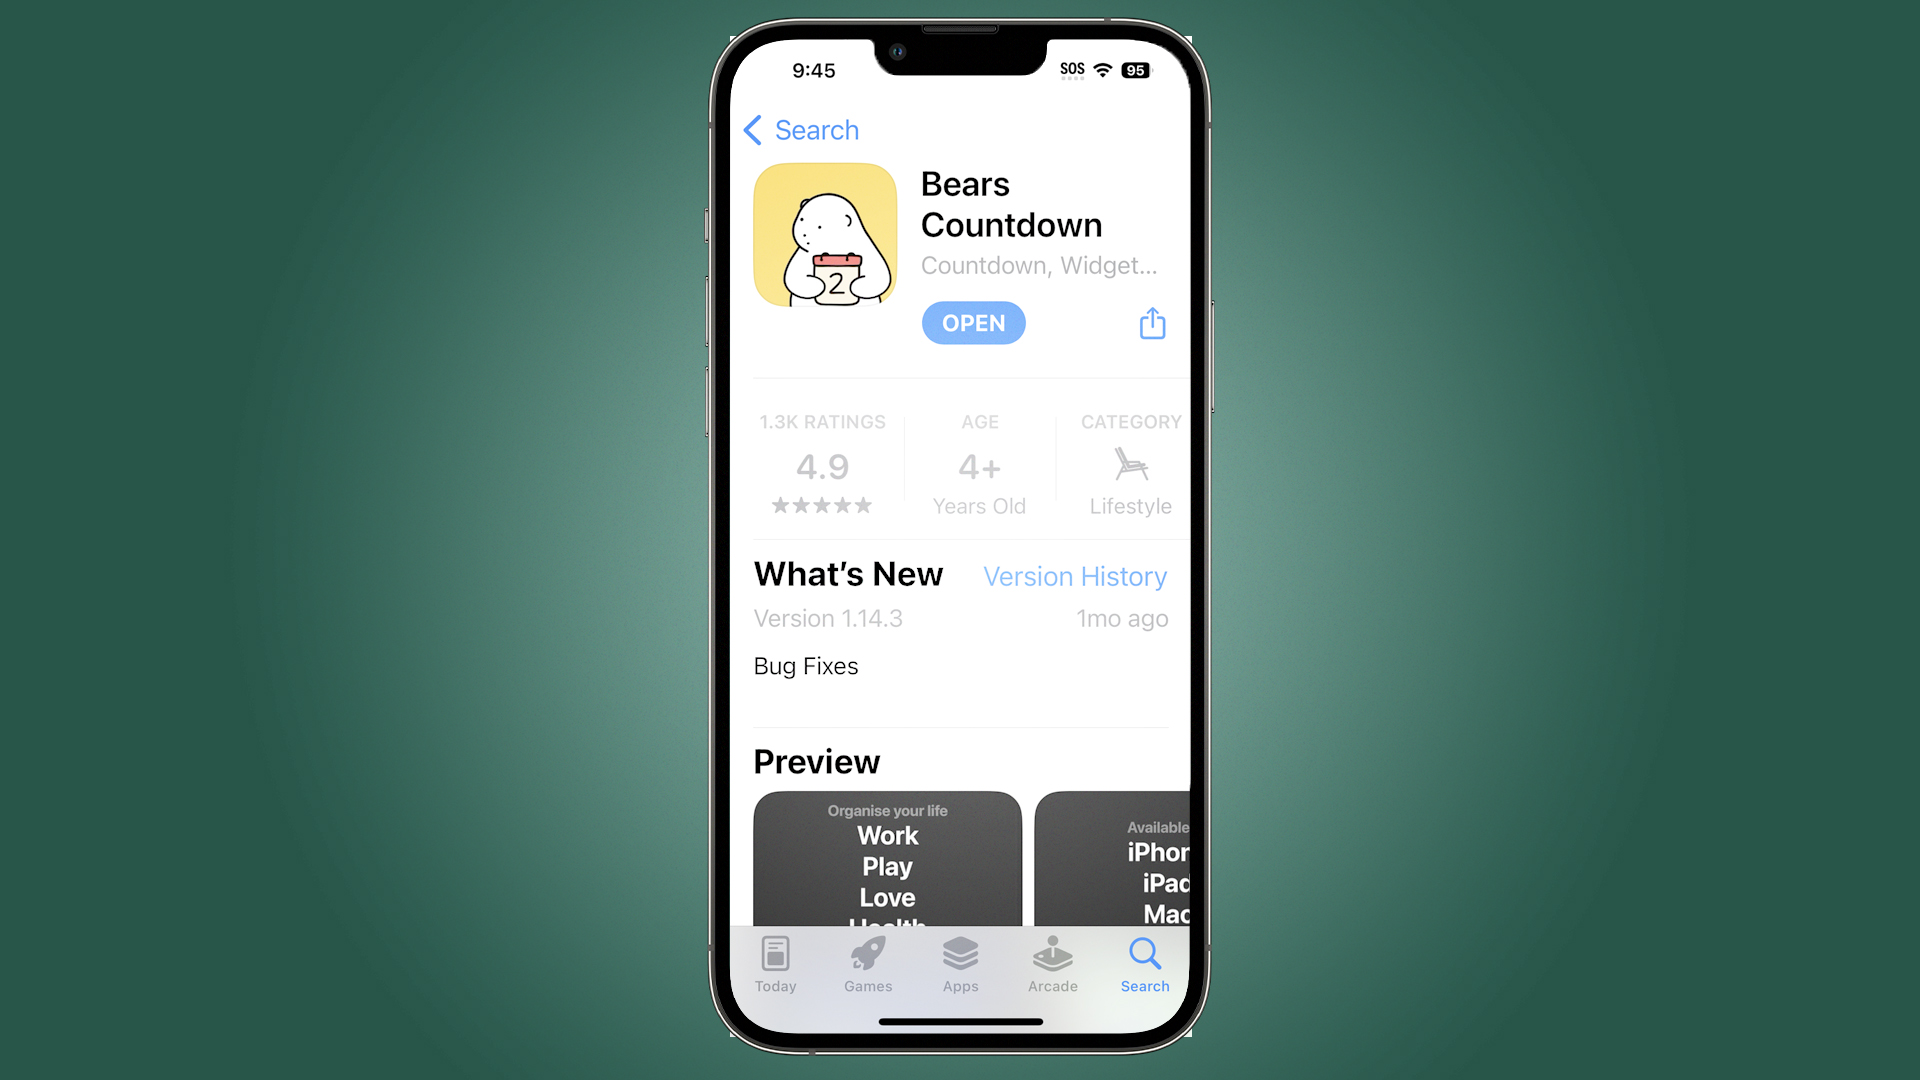 Bears Countdown app in store